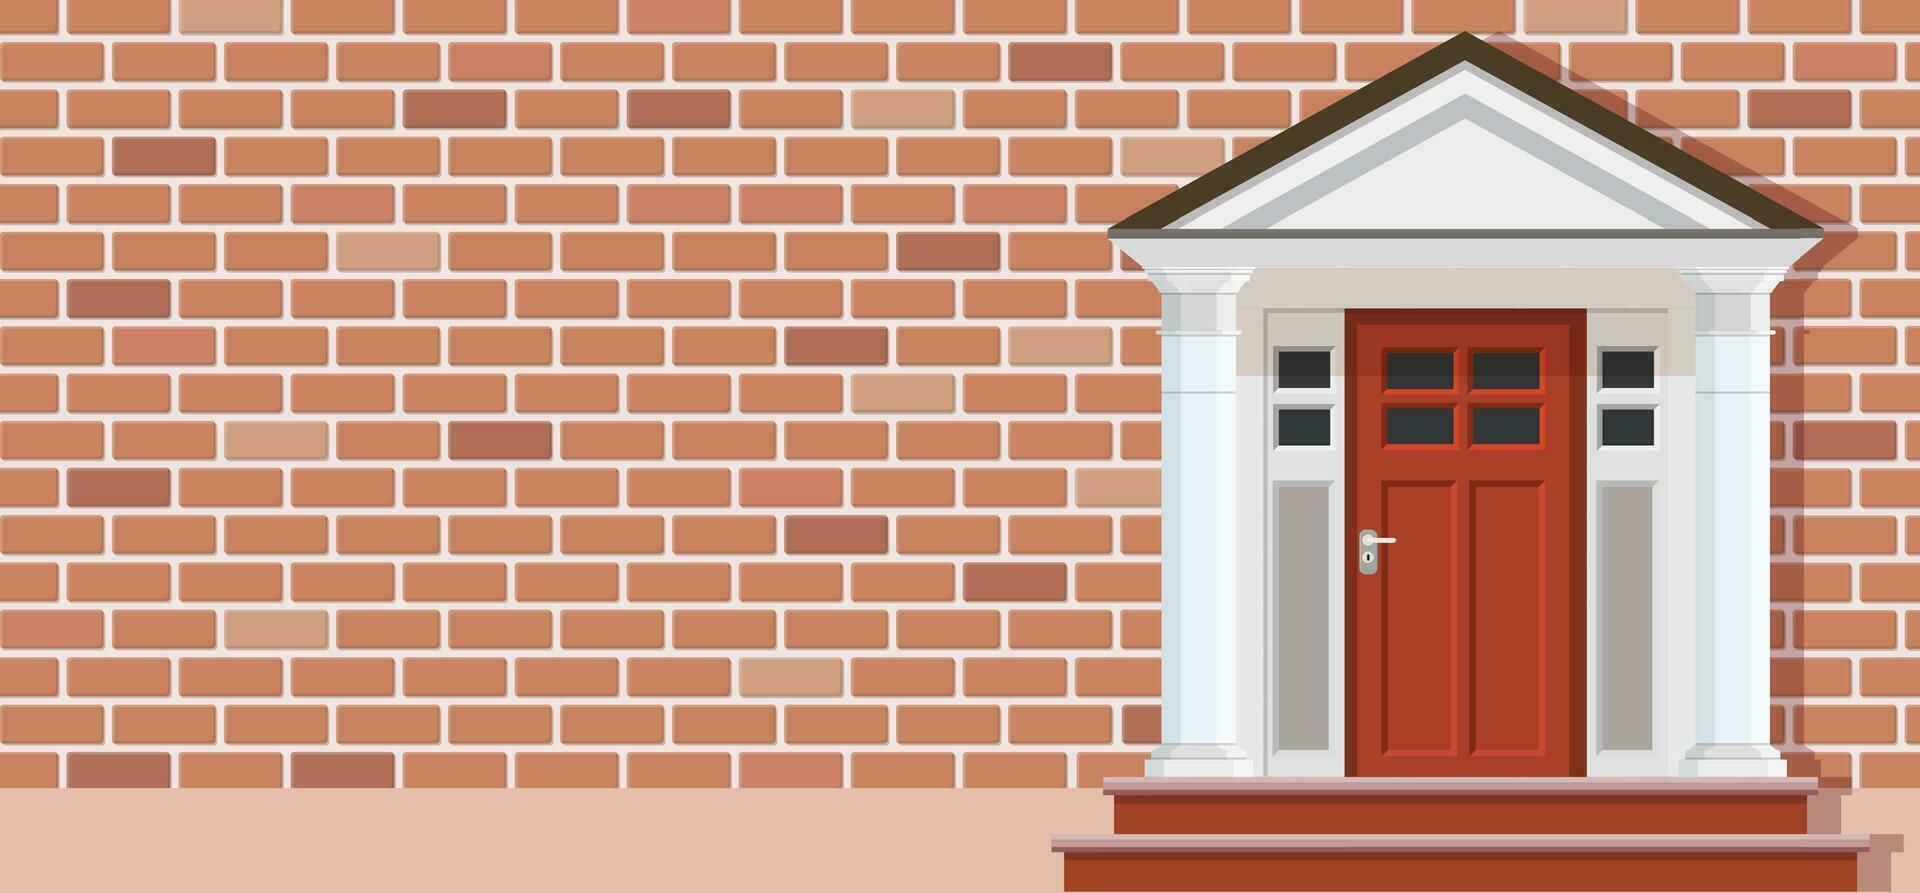 de madera puerta de ladrillo casa frente vista, arquitectura fondo, edificio hogar real inmuebles fondo. vector ilustración en plano estilo